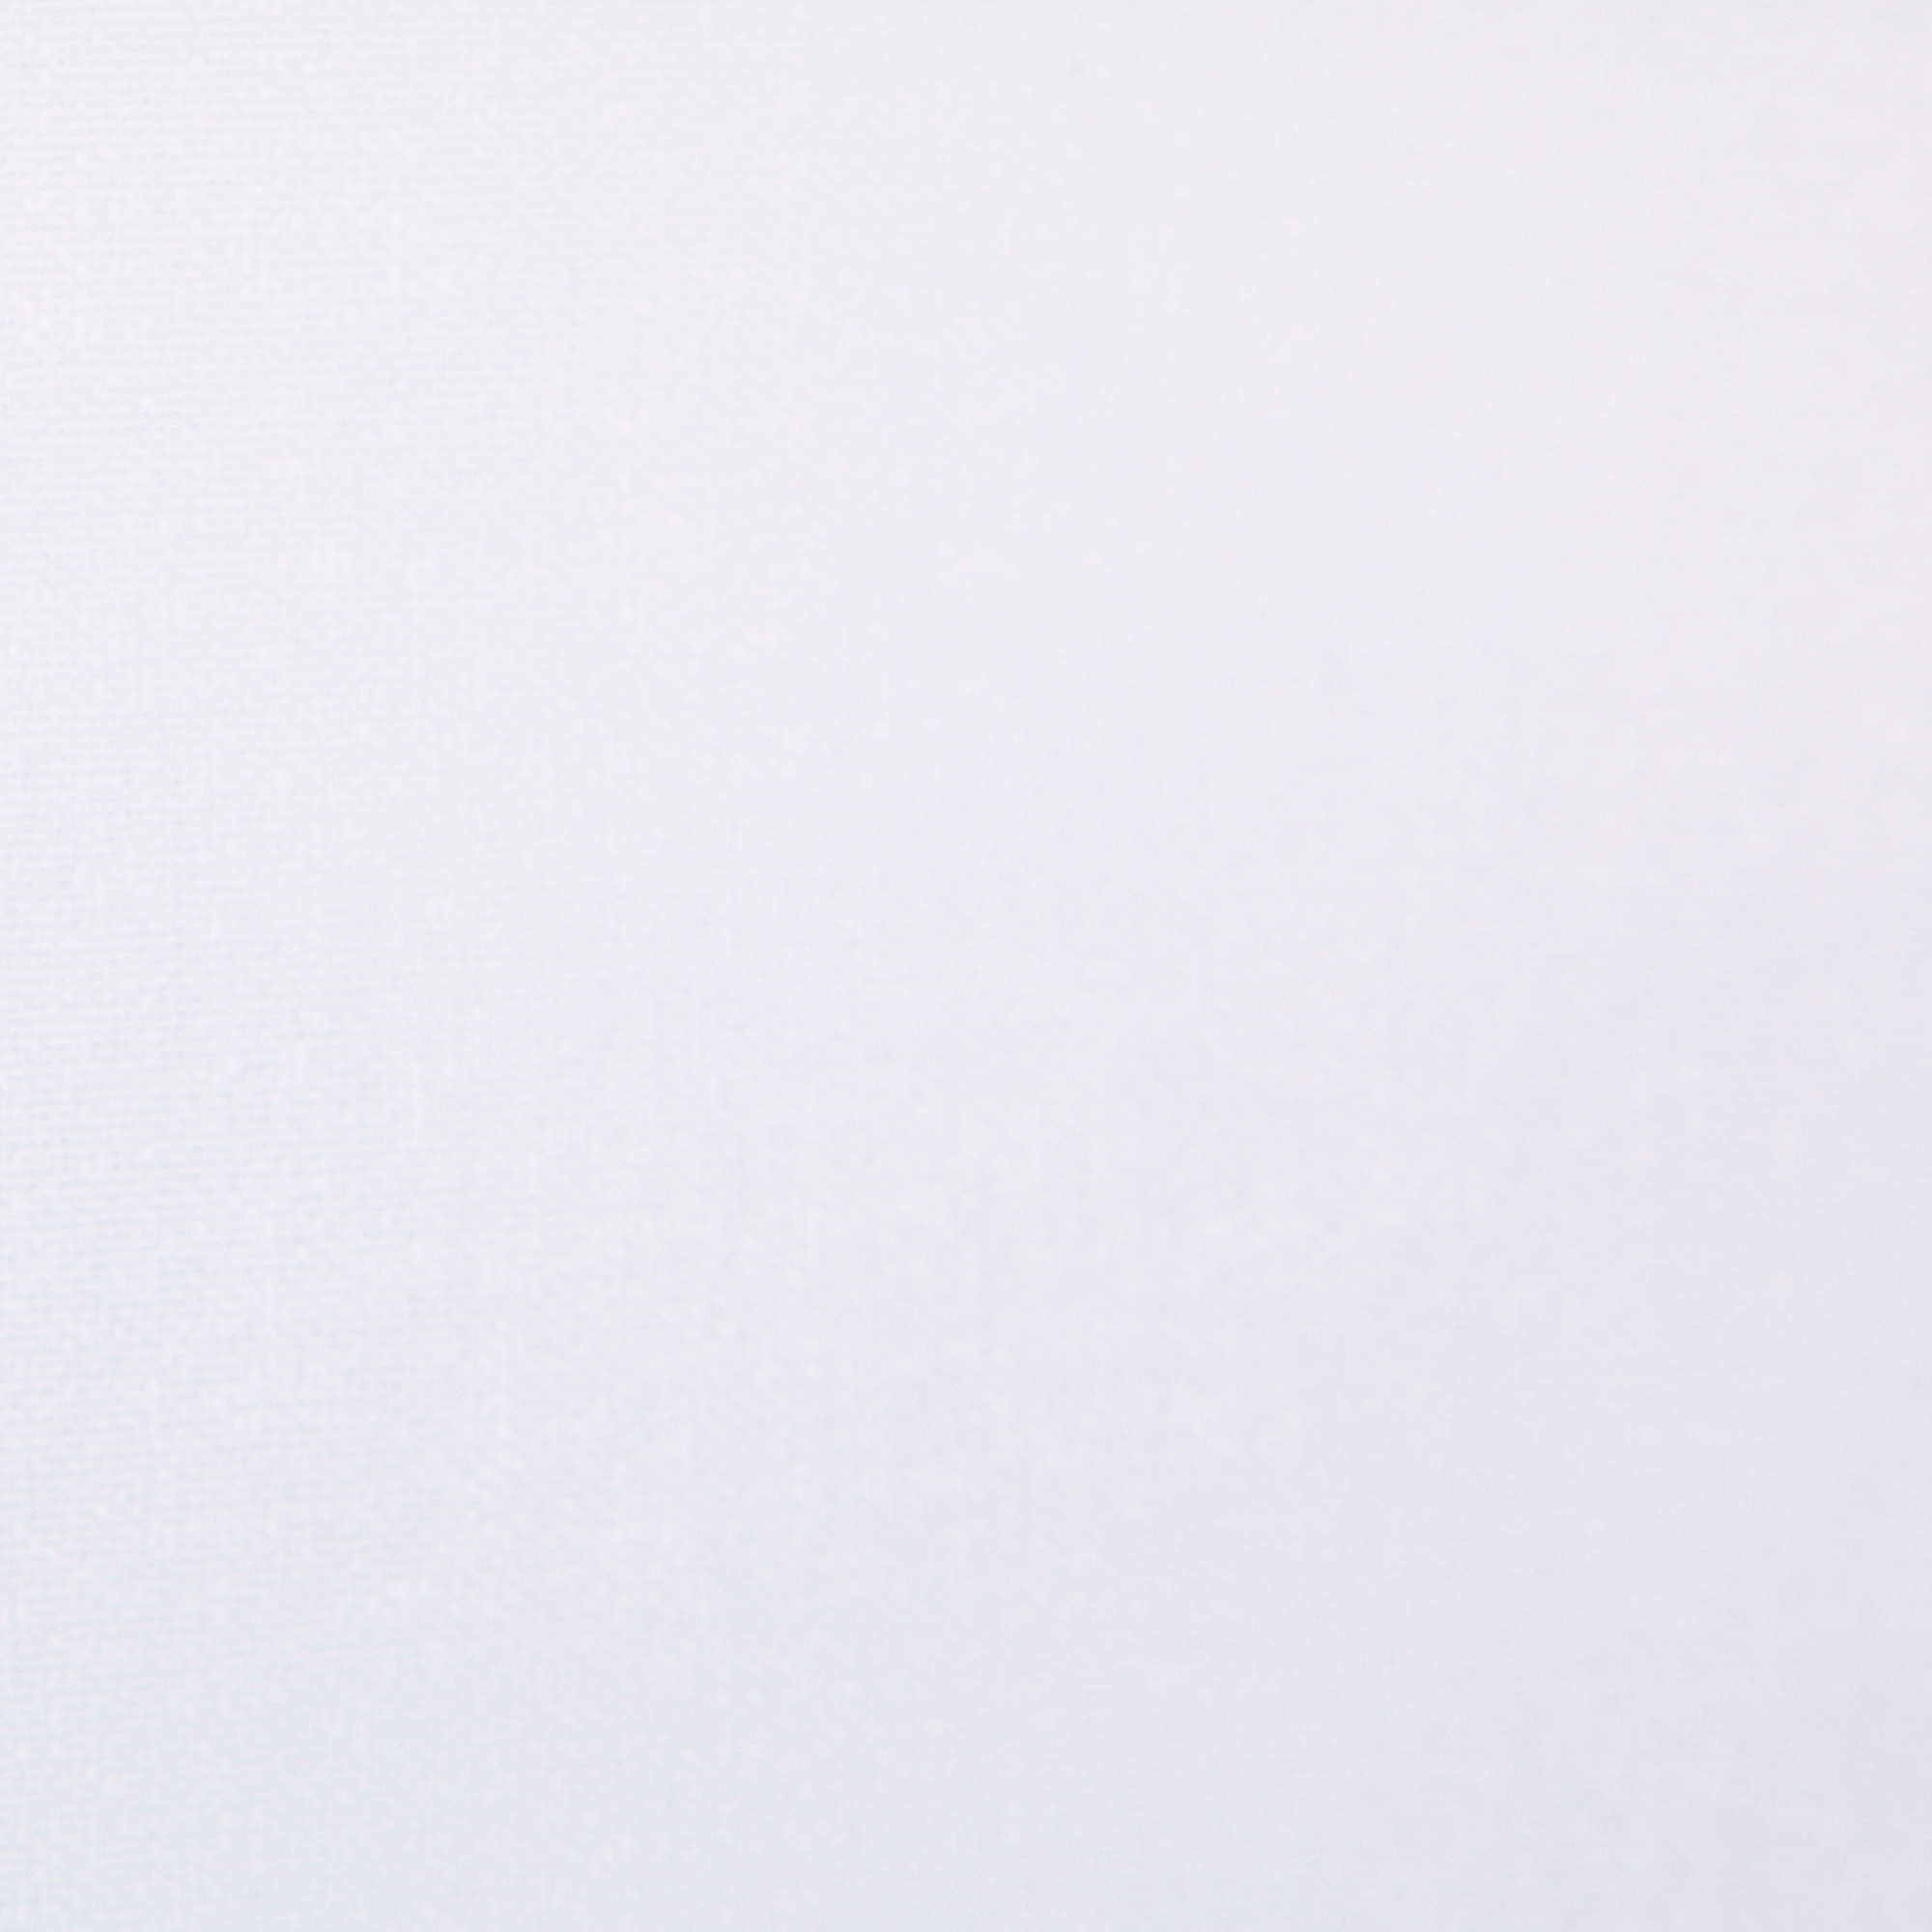 Seitenzug-Rollo 'Lichtdurchlässig' weiß 112 x 180 cm + product picture